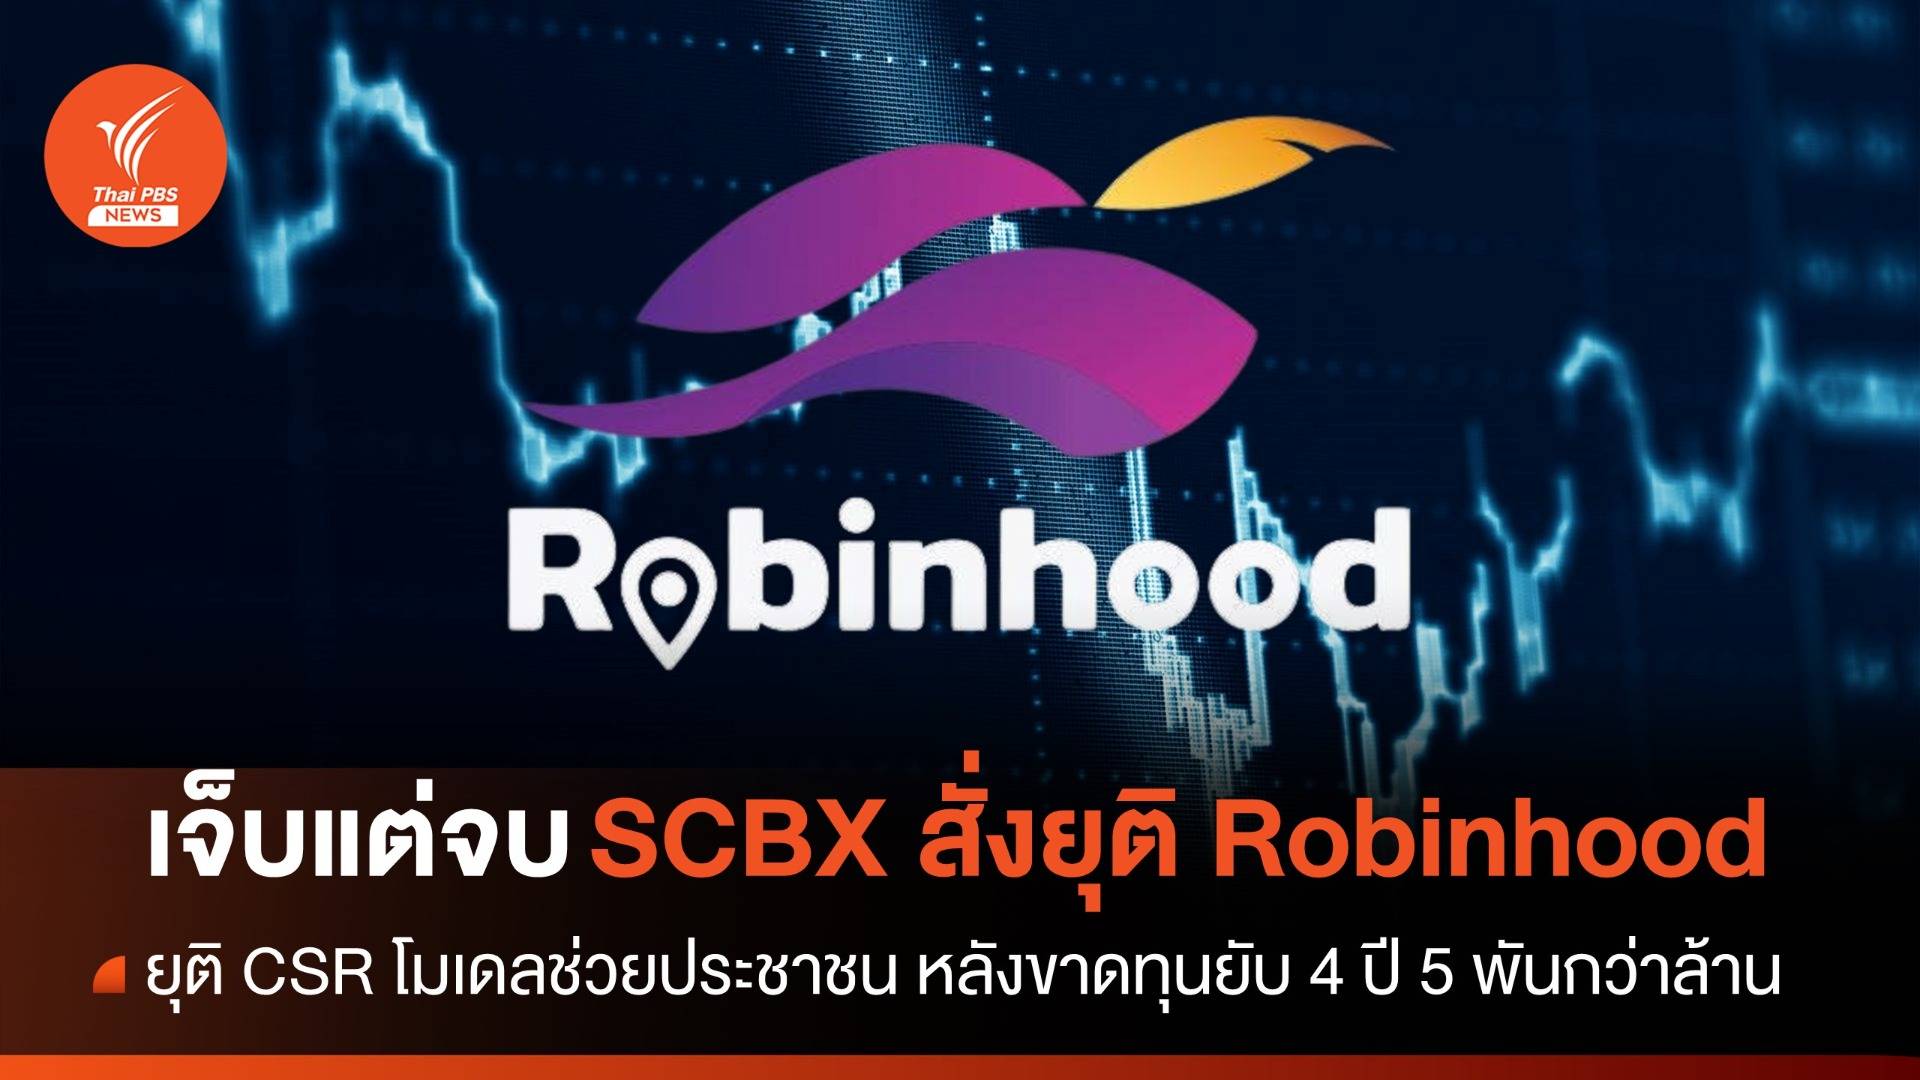 ยุติโมเดล CSR ช่วยประชาชน SCBX ตัดจบ Robinhood เซฟตัวเอง